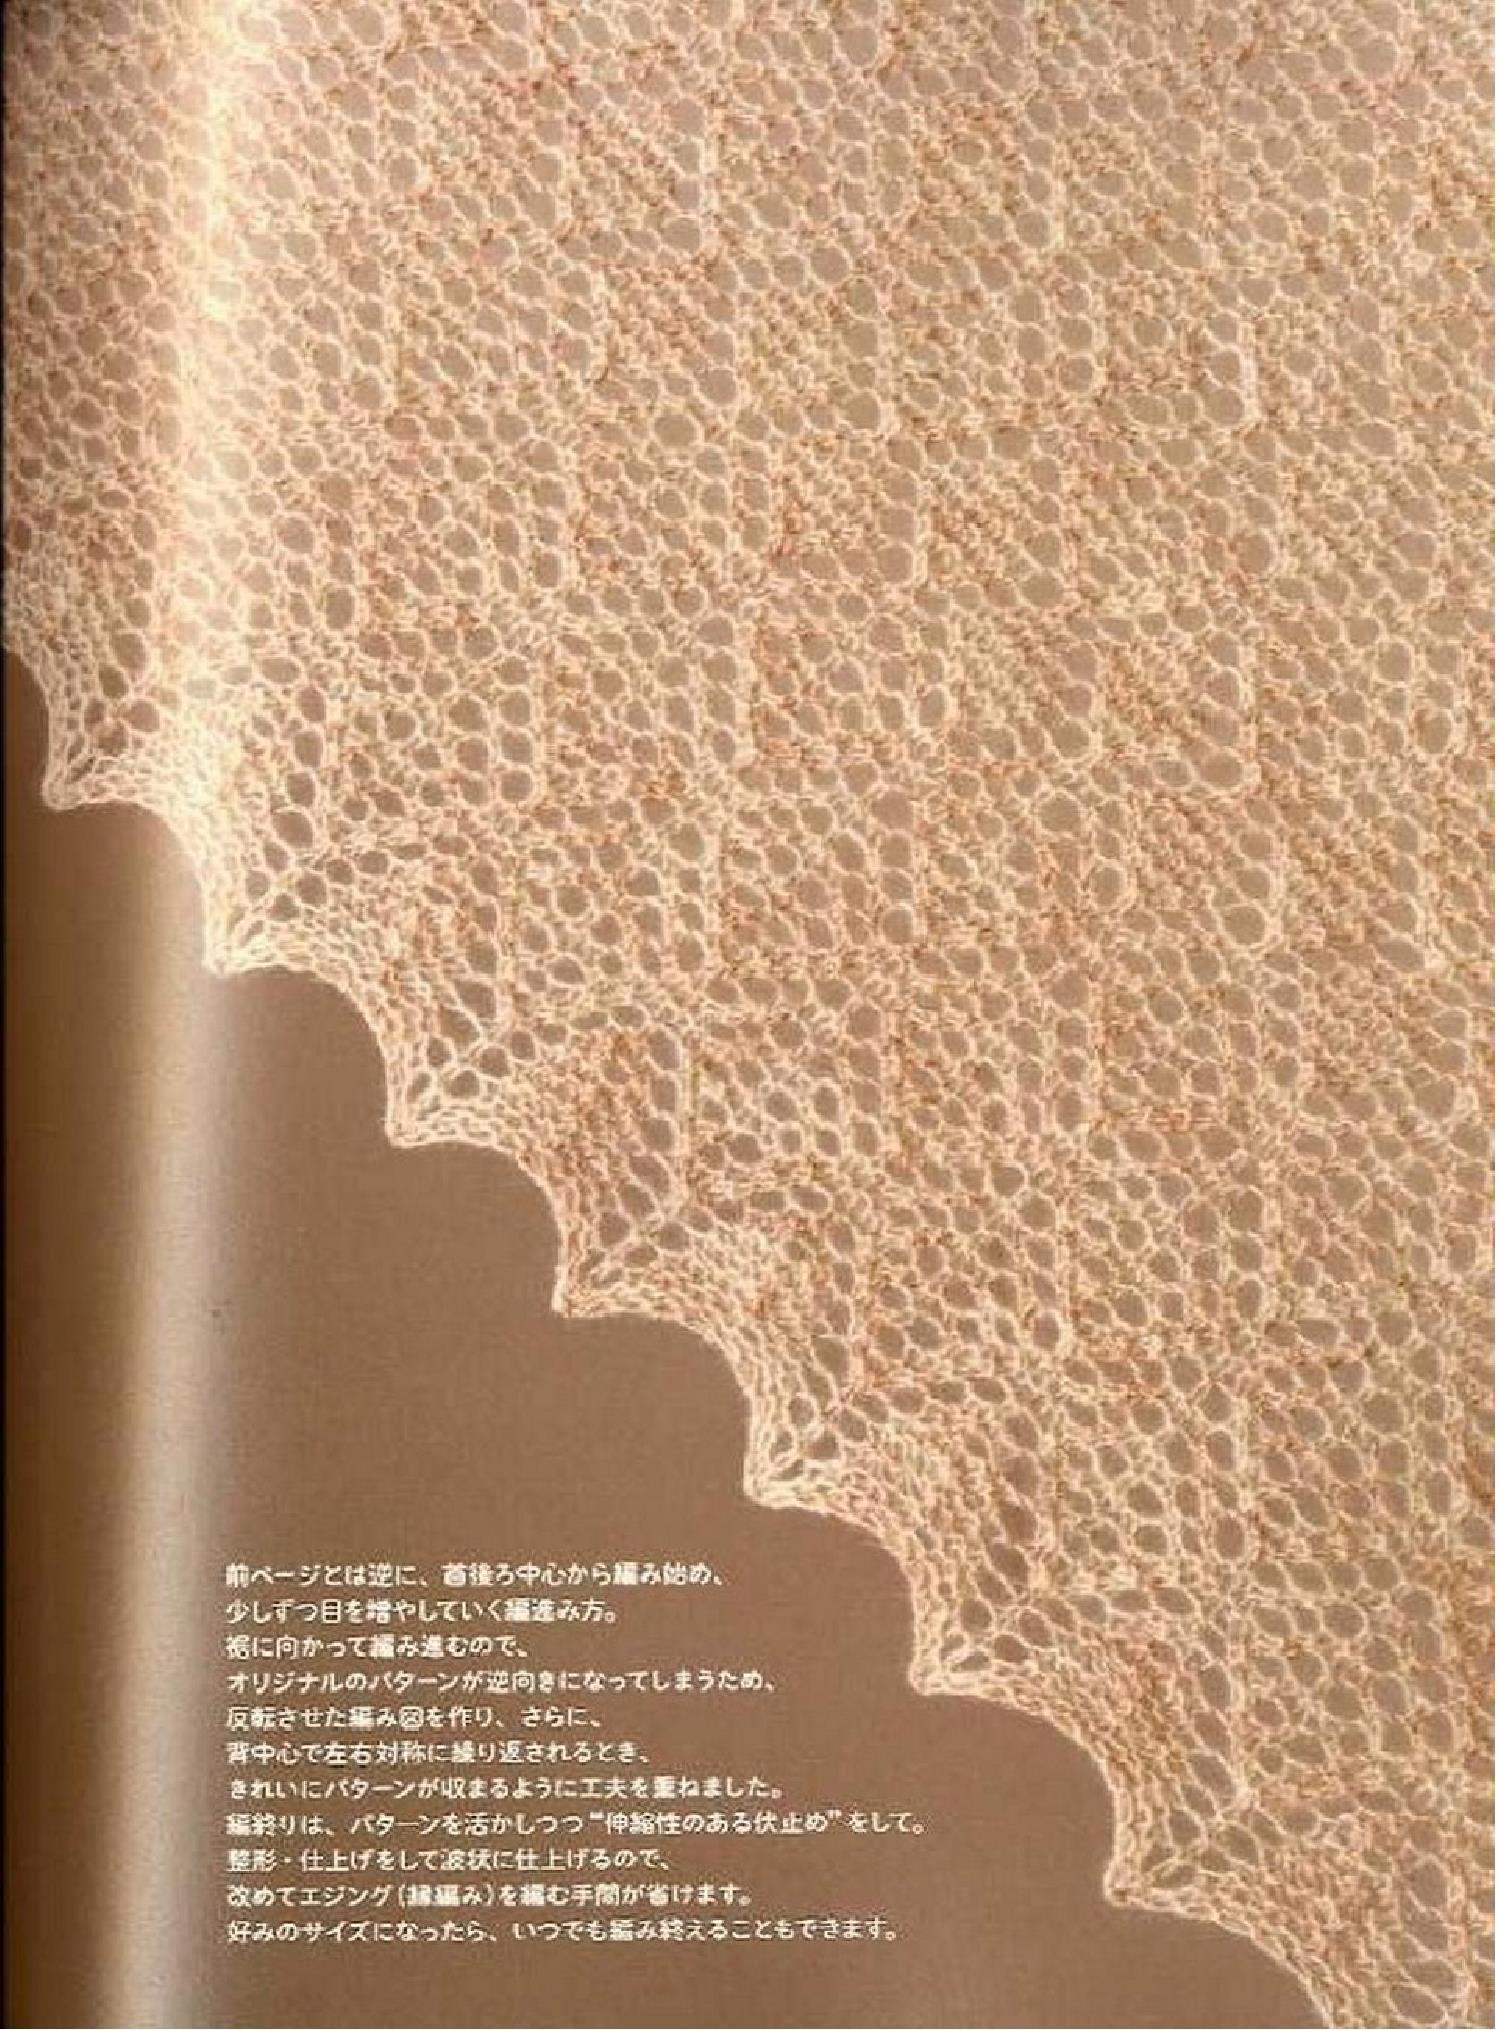 日本编织大师嶋田俊之创作的两款欧版传统蕾丝大披肩